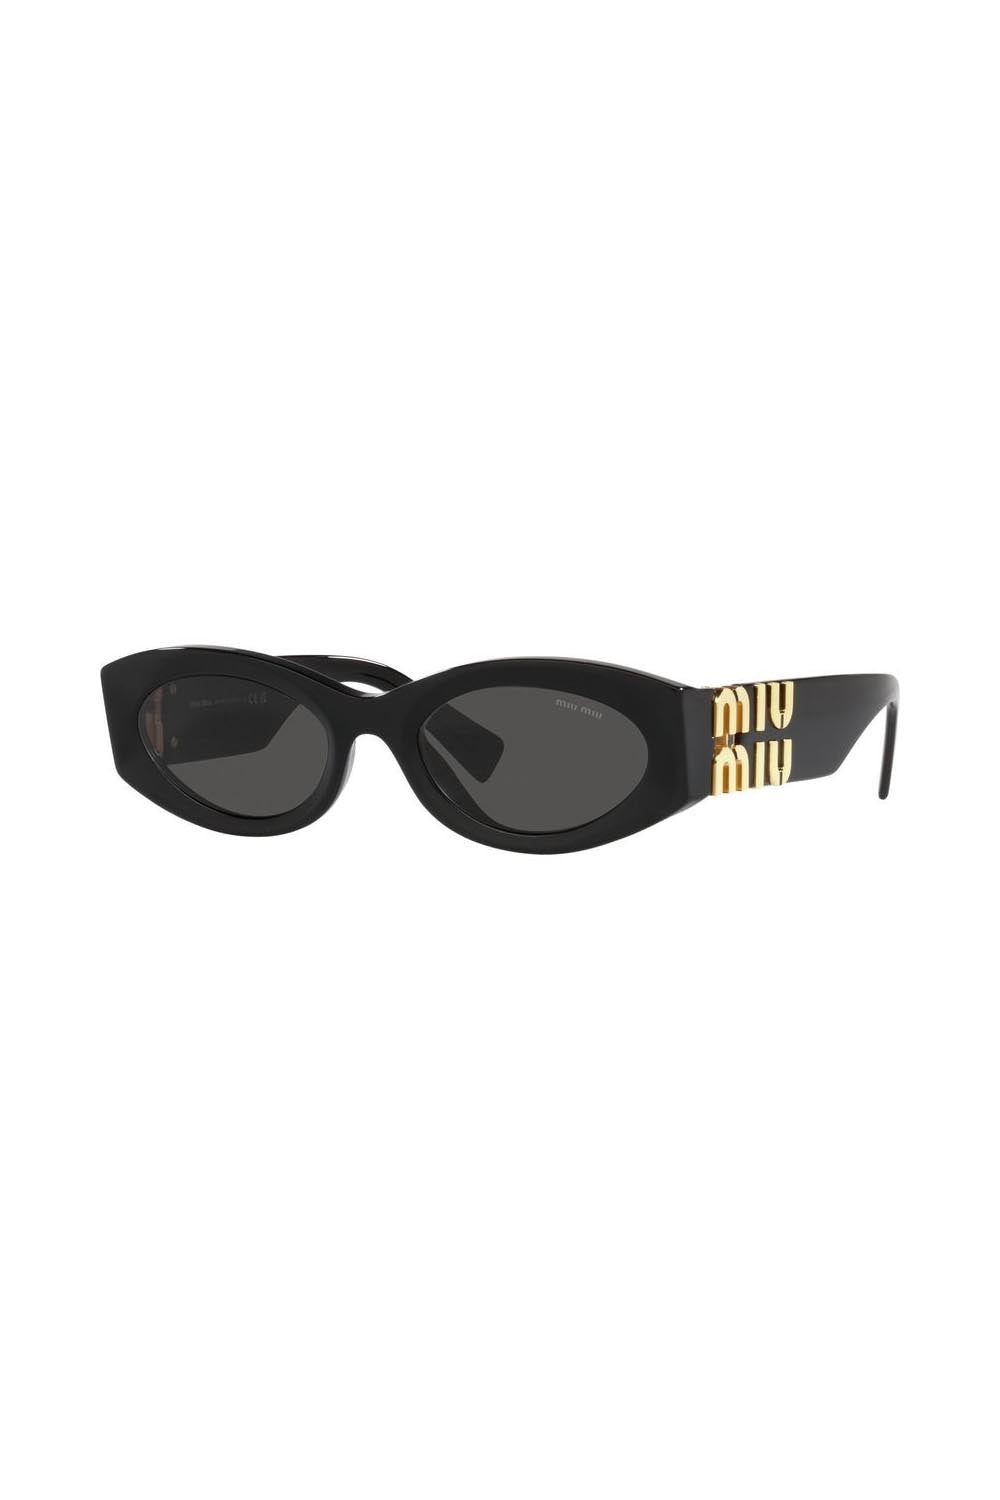 Miu Miu Sunglasses MU 11WS Black